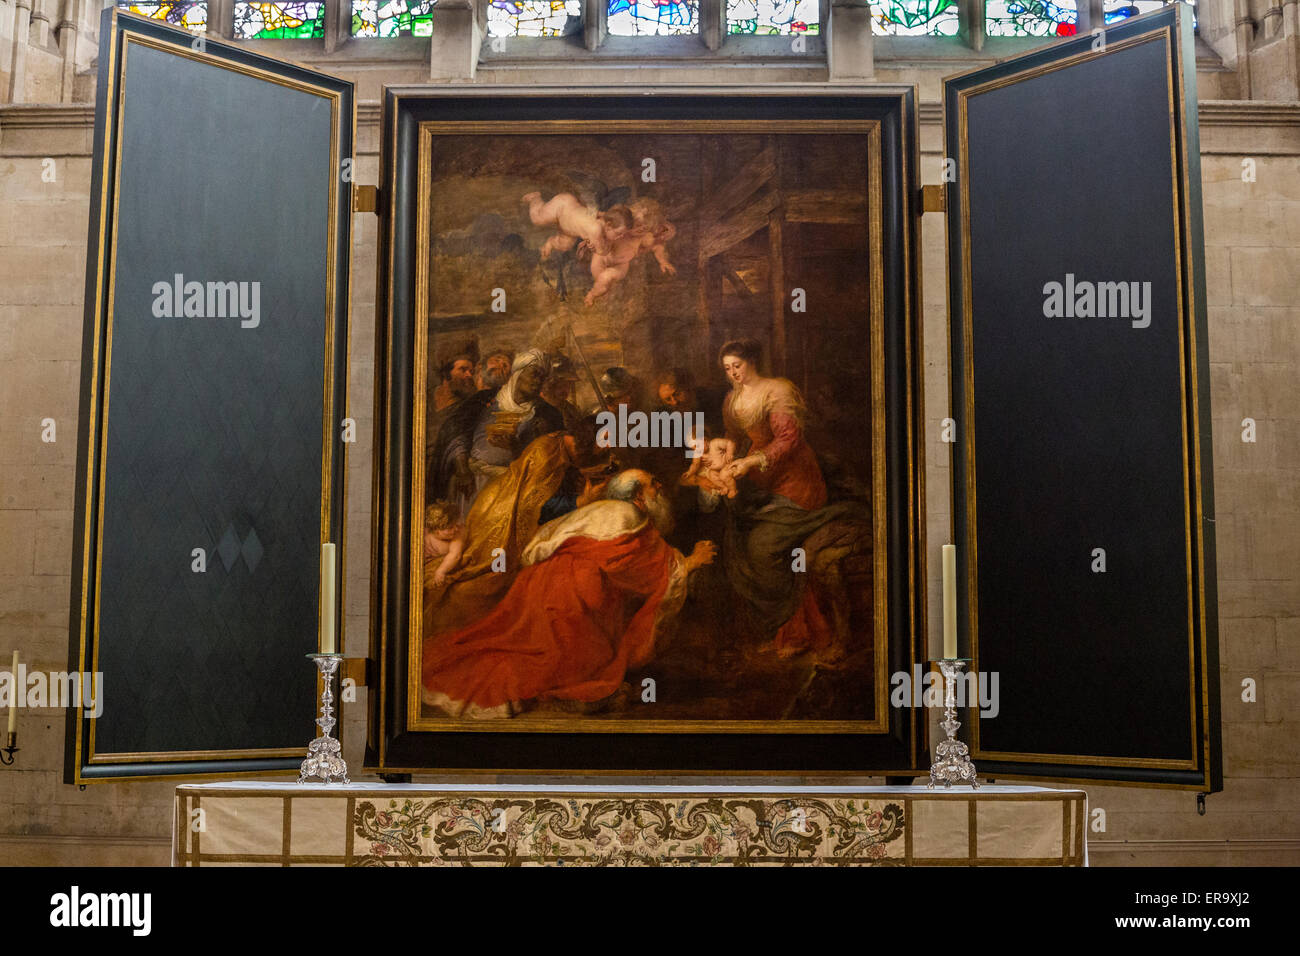 Royaume-uni, Angleterre, Cambridge. King's College Chapel, l'Adoration des mages, par Peter Paul Rubens, 1634. Banque D'Images